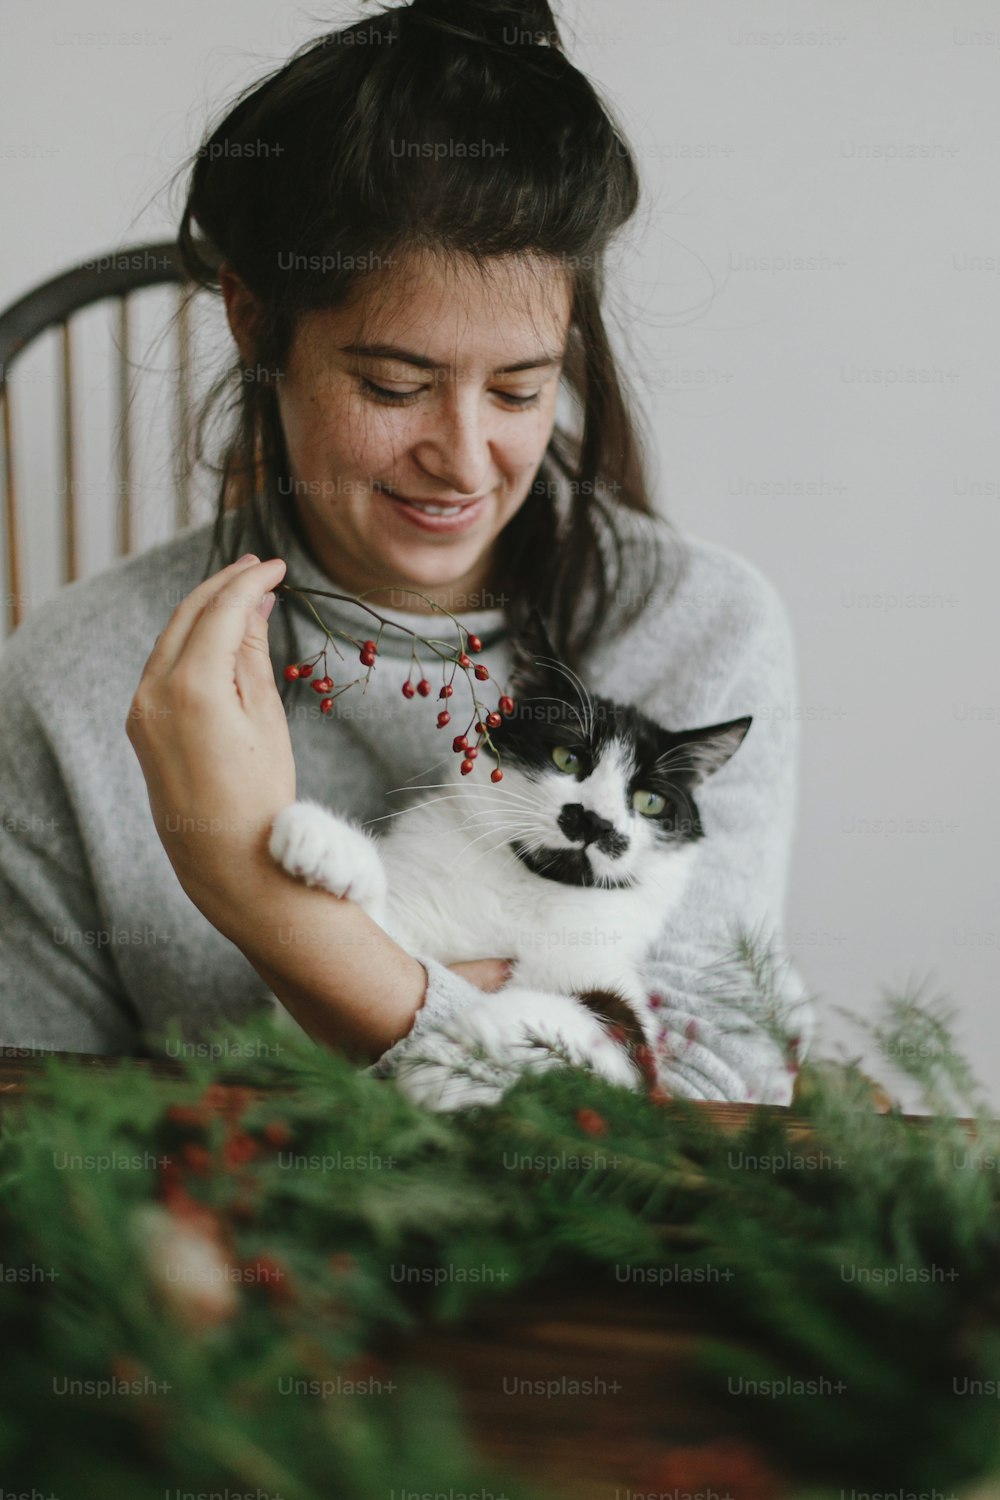 Weihnachtskranz mit niedlicher Katze zu Hause machen, Feiertagsadvent. Glückliche Frau, die Weihnachtskranz mit entzückendem Katzenhelfer macht, rote Beeren und grüne Zweige hält. Stilvolles authentisches Bild